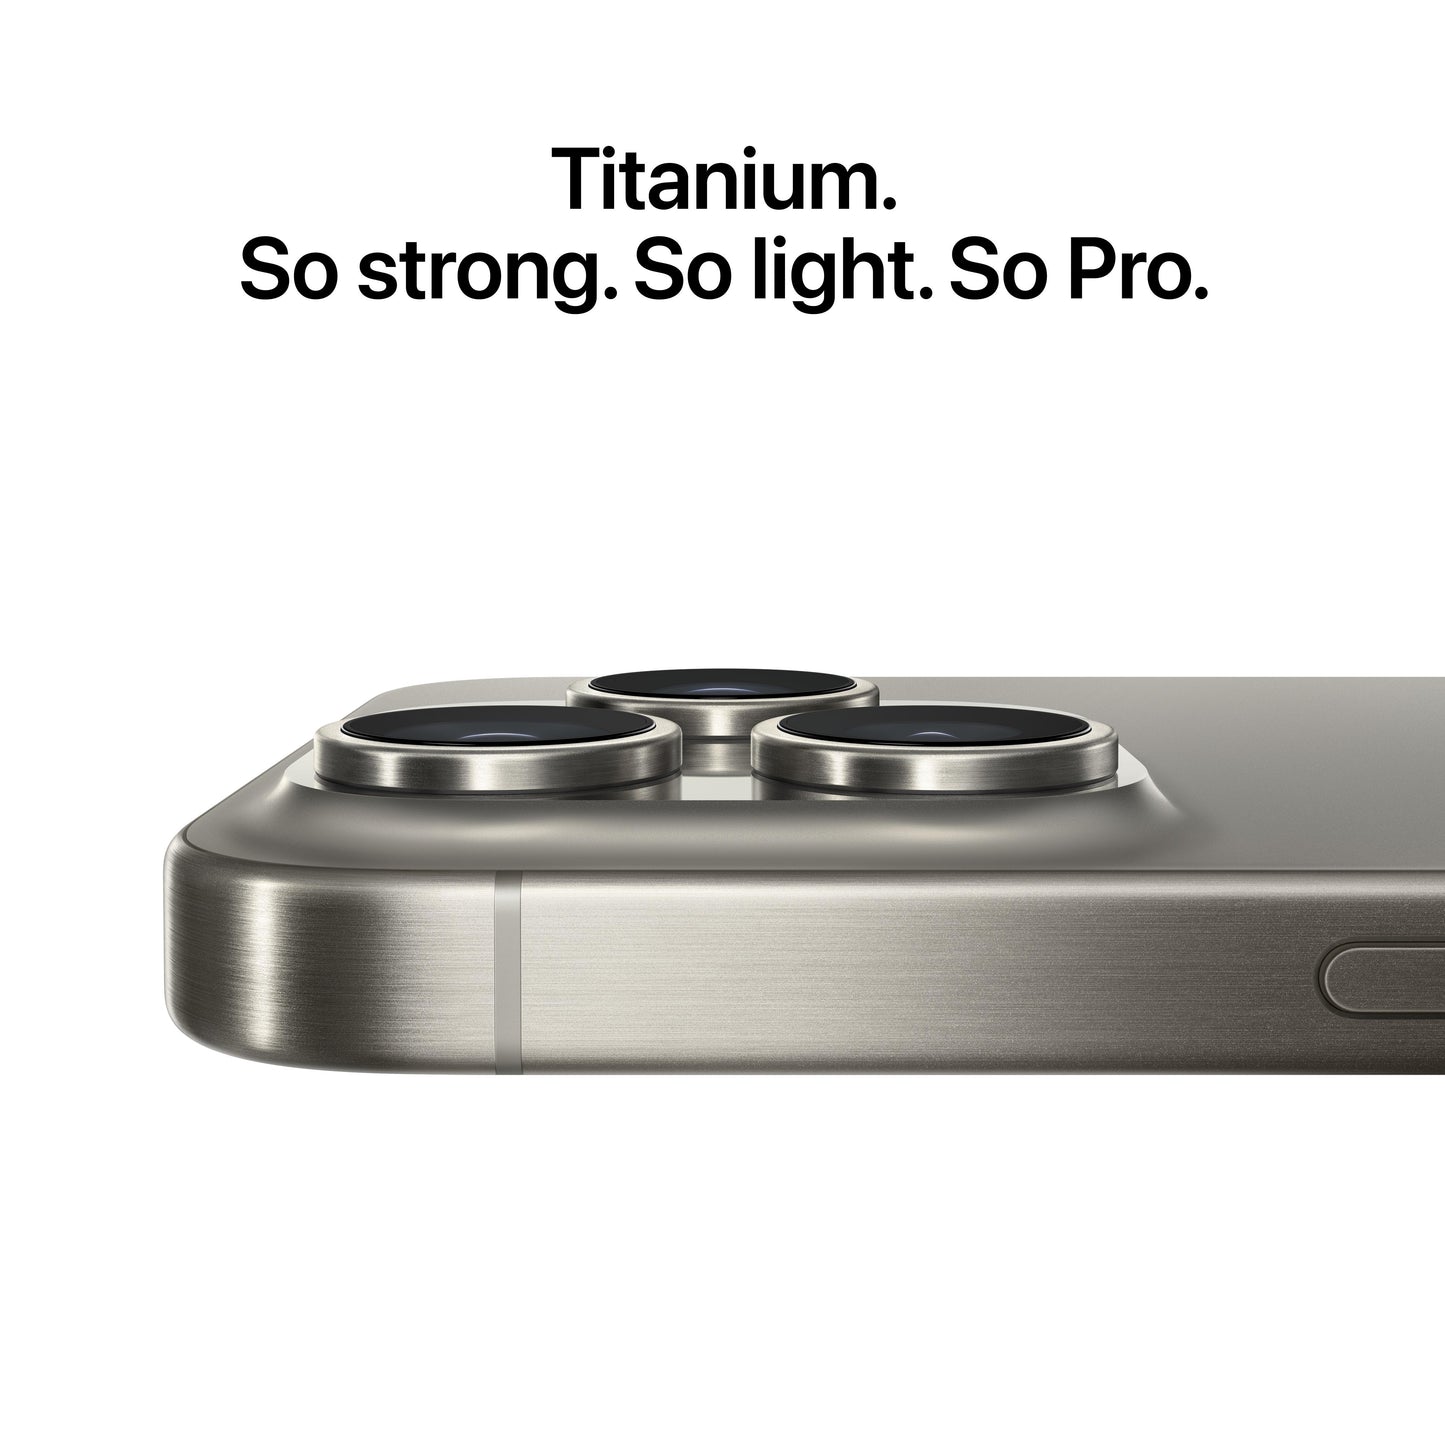 iPhone 15 Pro 512GB Natural Titanium